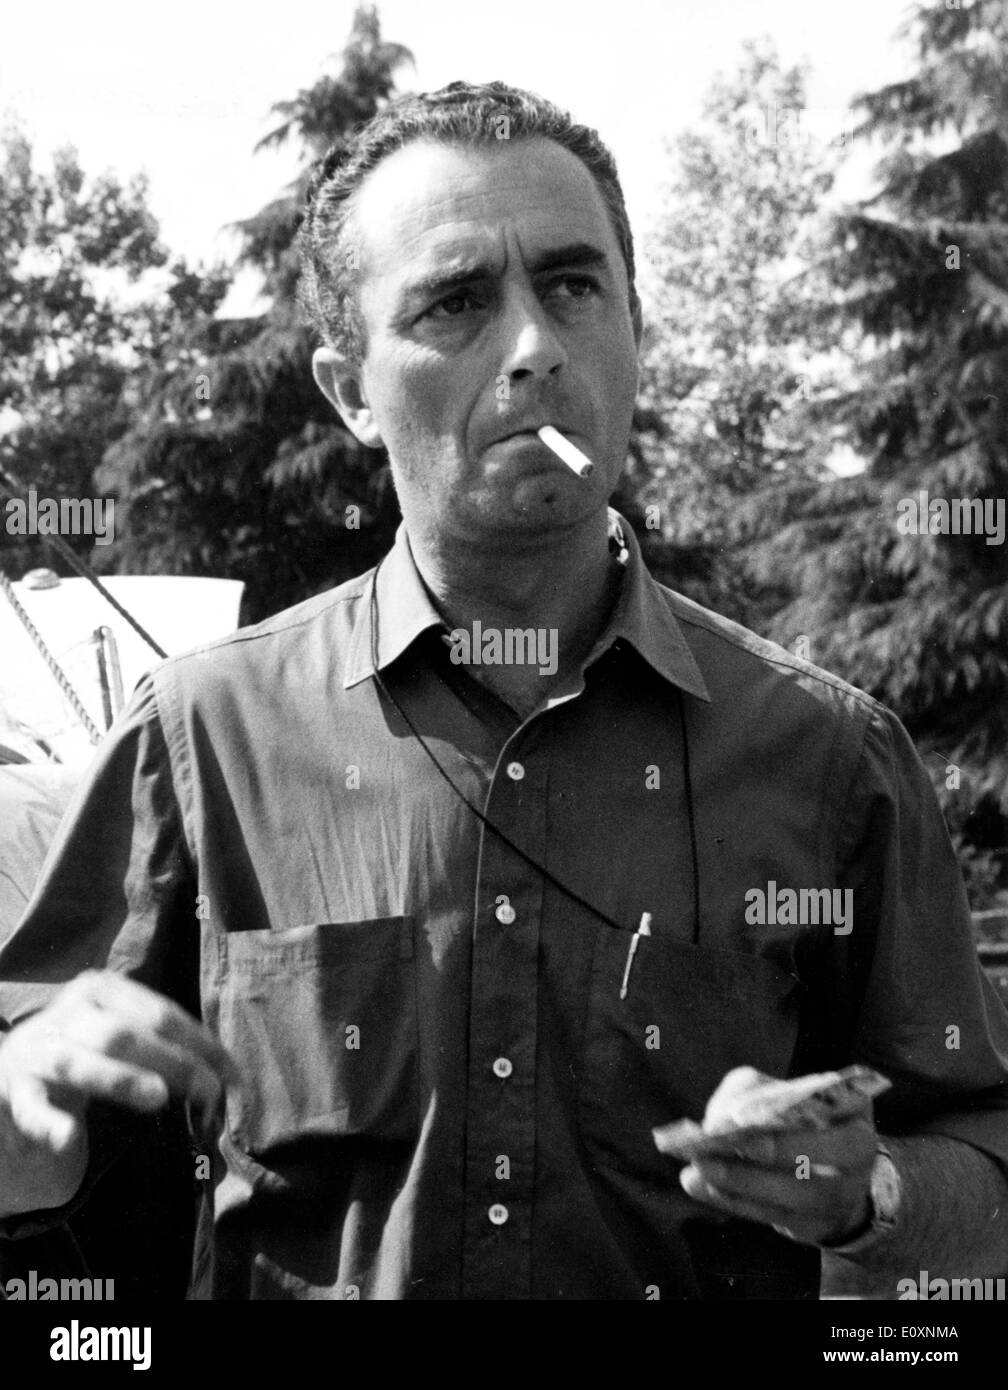 El director de cine Michelangelo Antonioni fumar un cigarrillo Foto de stock